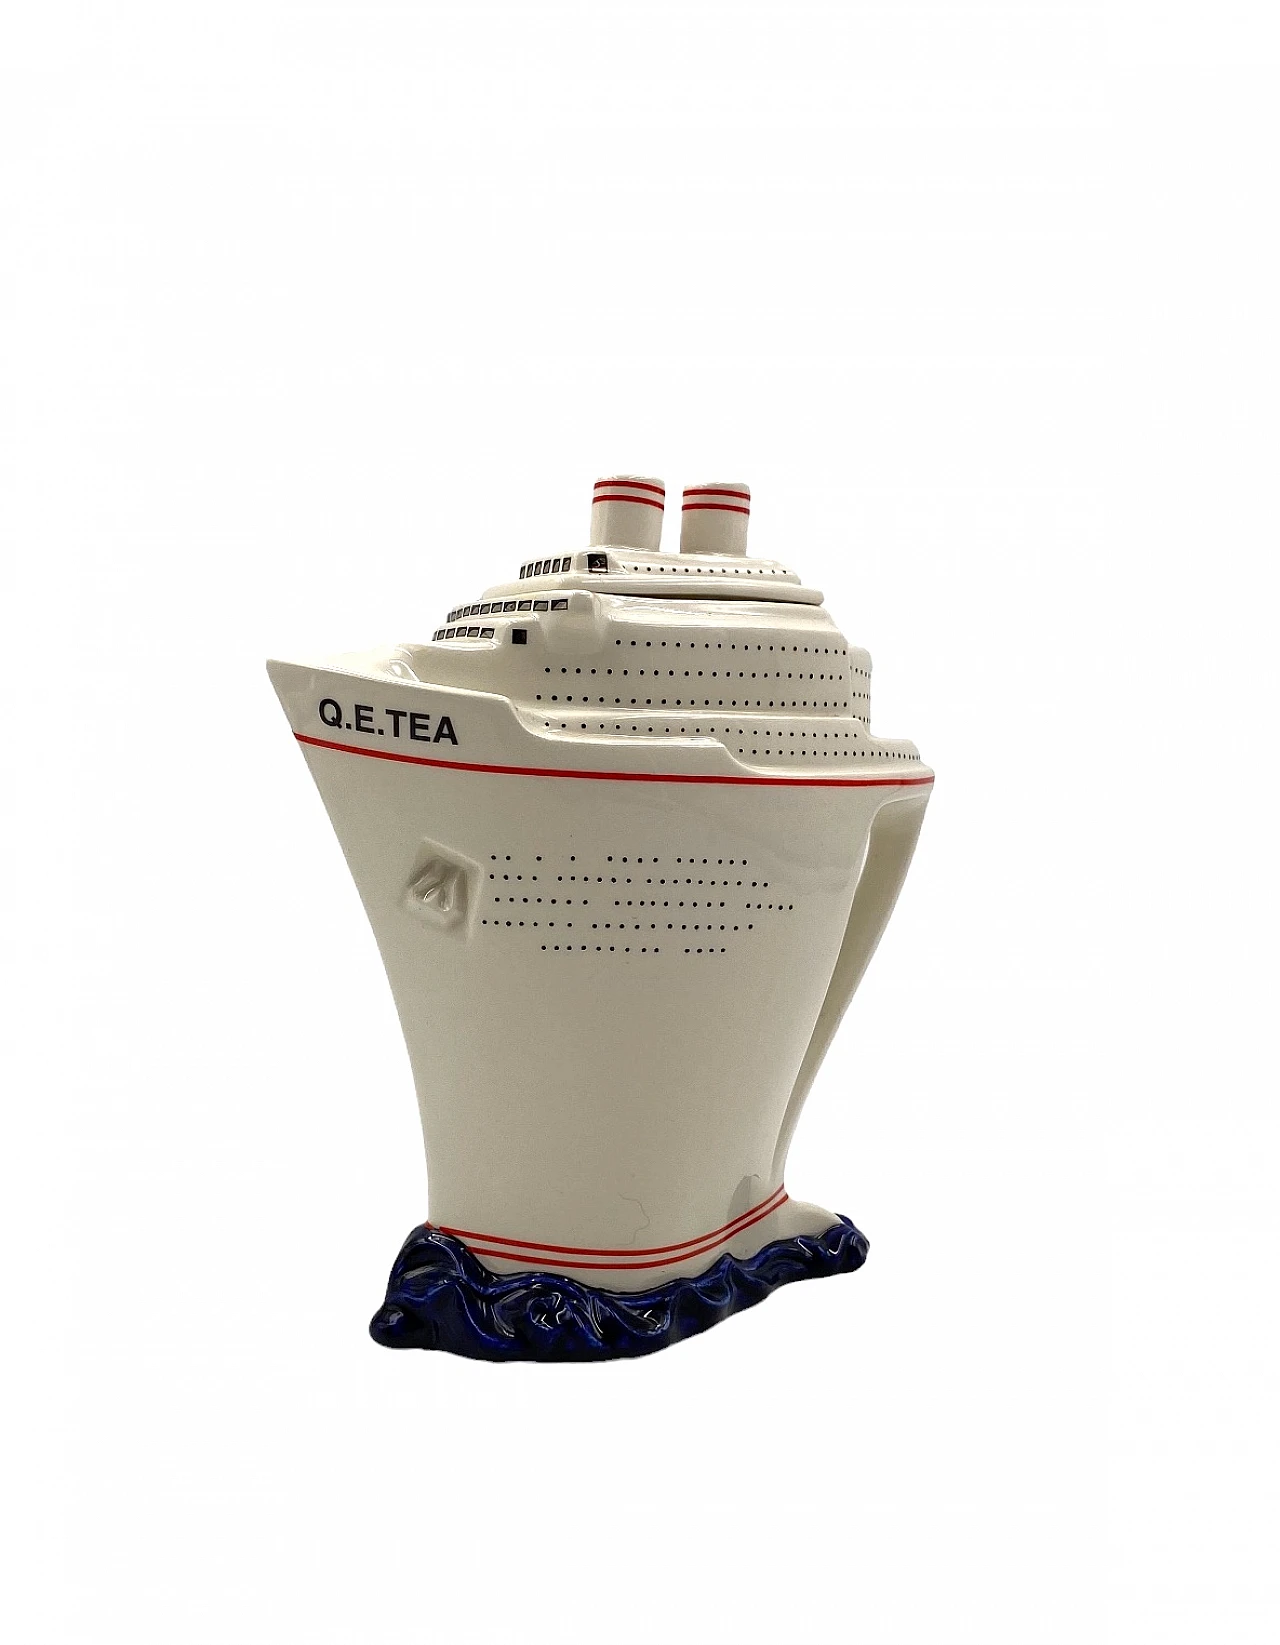 Queen Elizabeth II cruise ship teapot by Paul Cardew 12